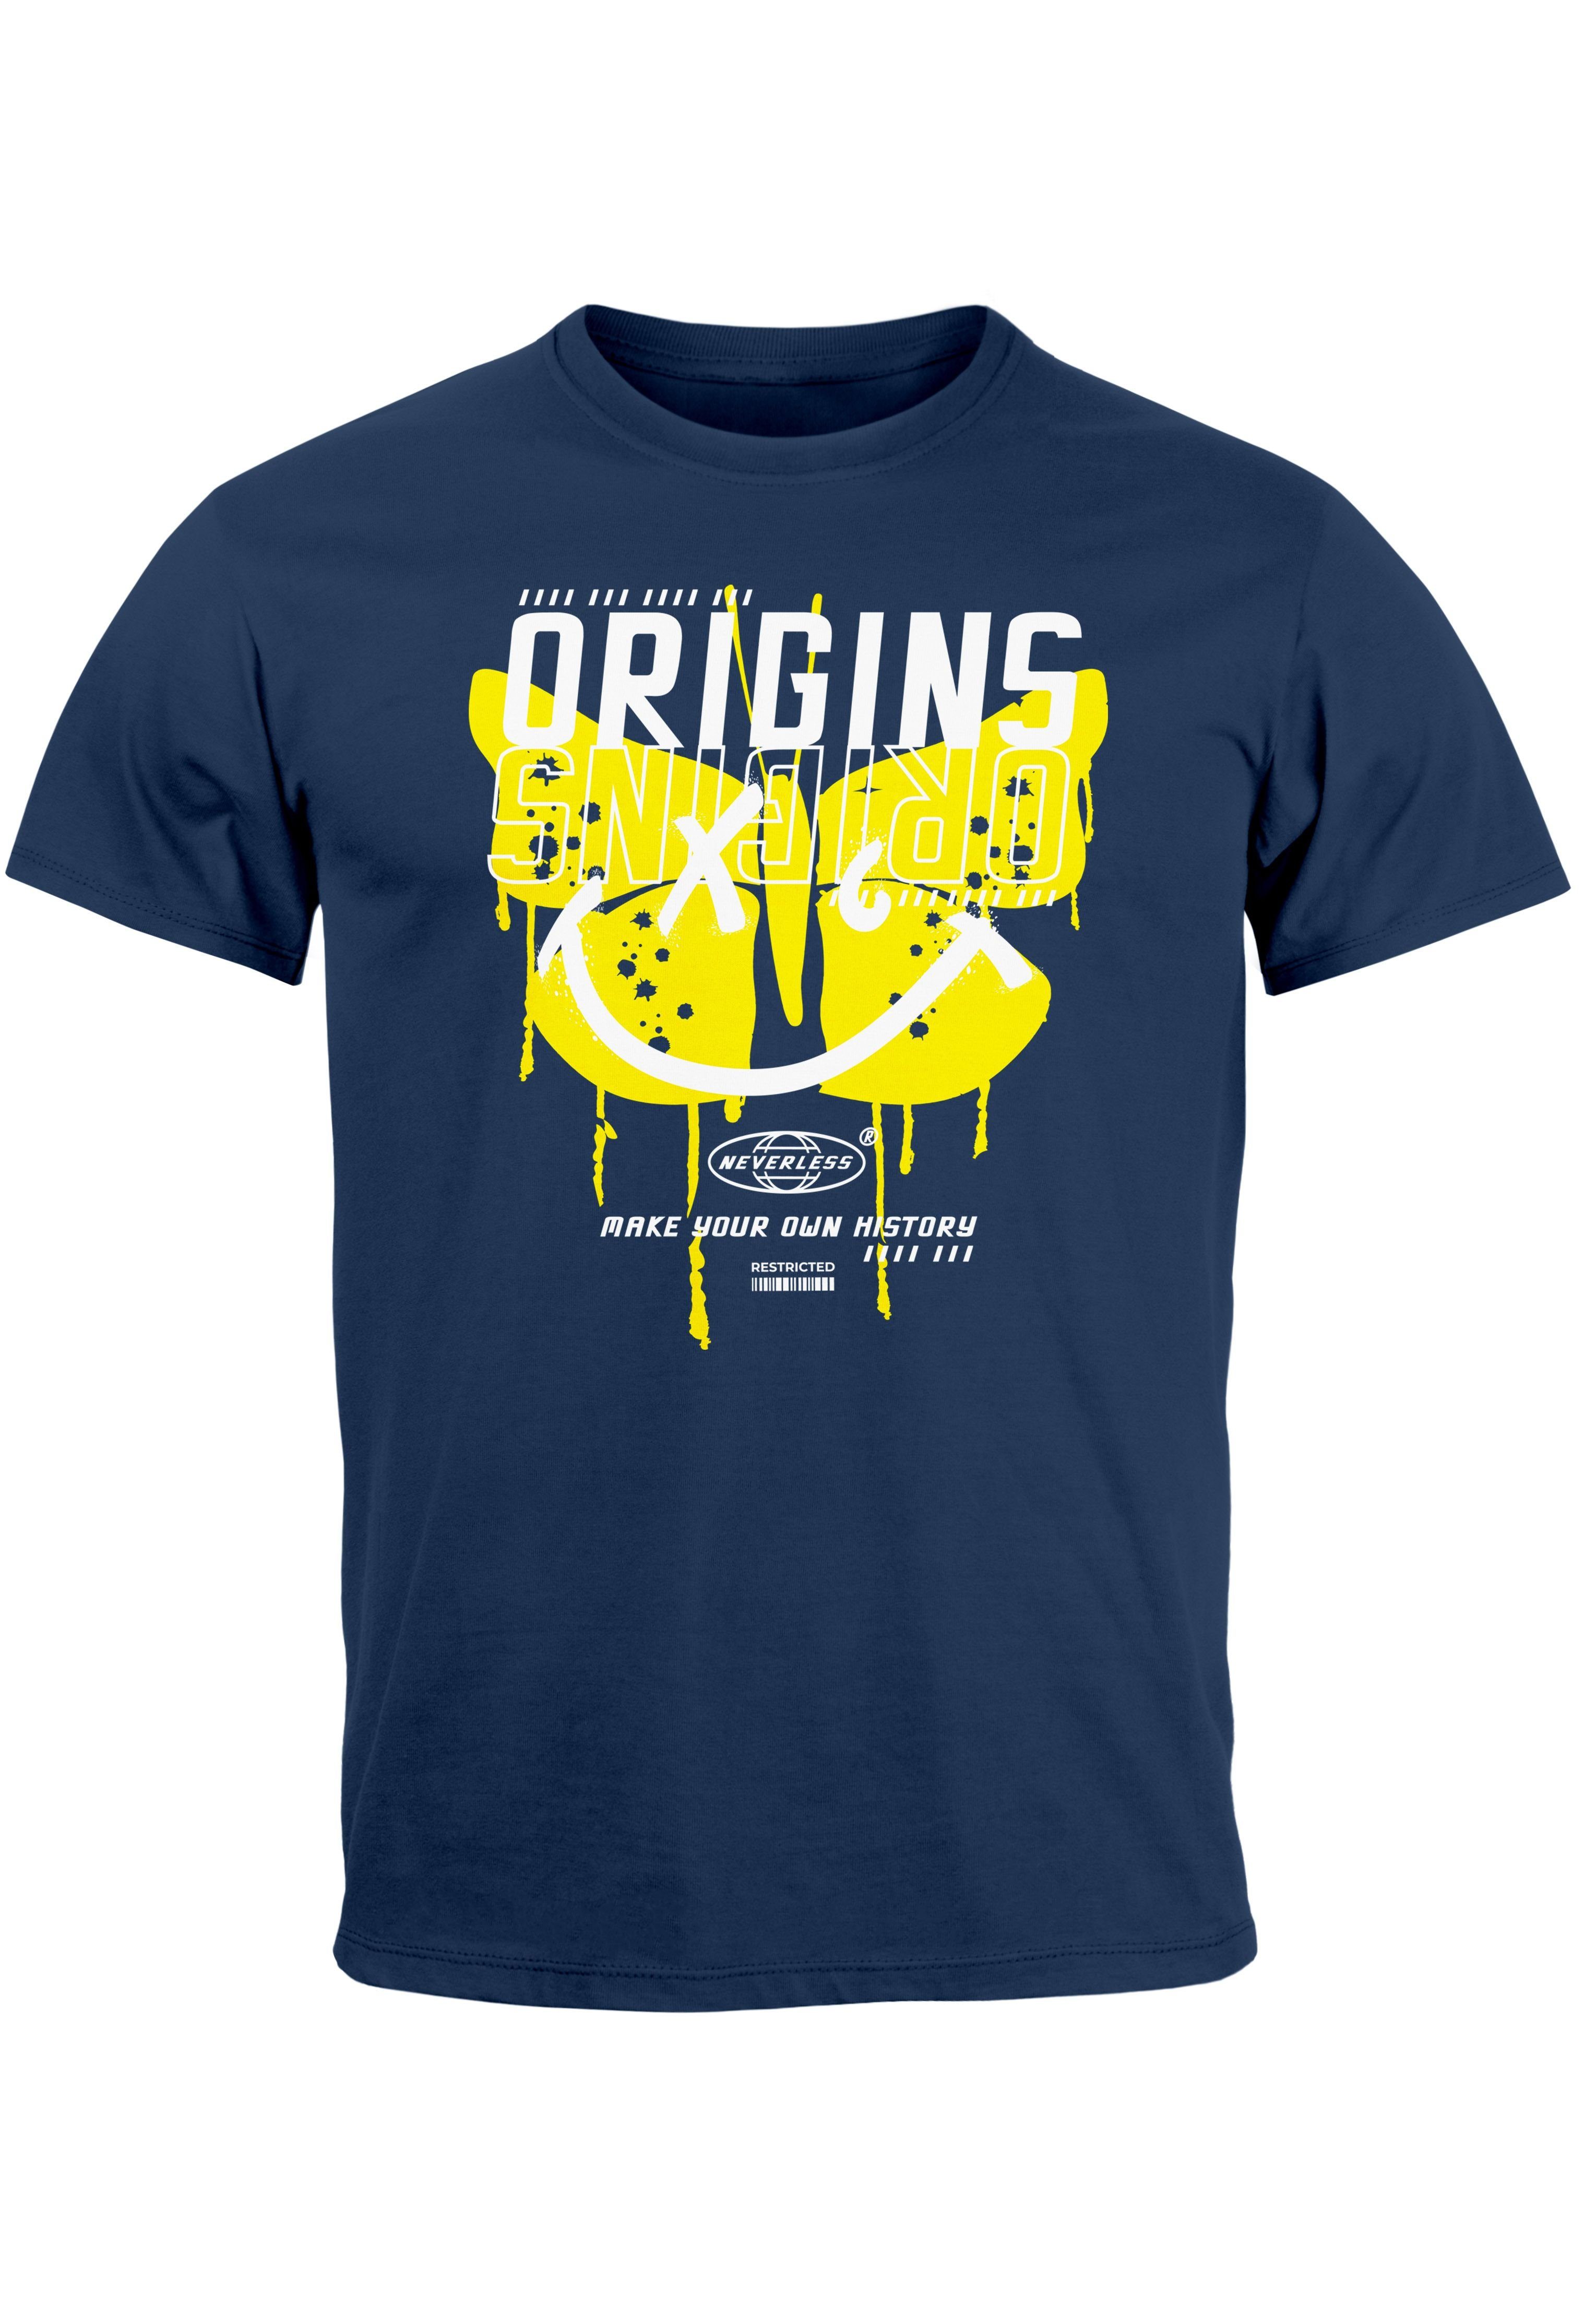 Neverless own Herren your History Butterfly navy-gelb Aufdruck T-Shirt Schmetterling Make Print-Shirt mit Print